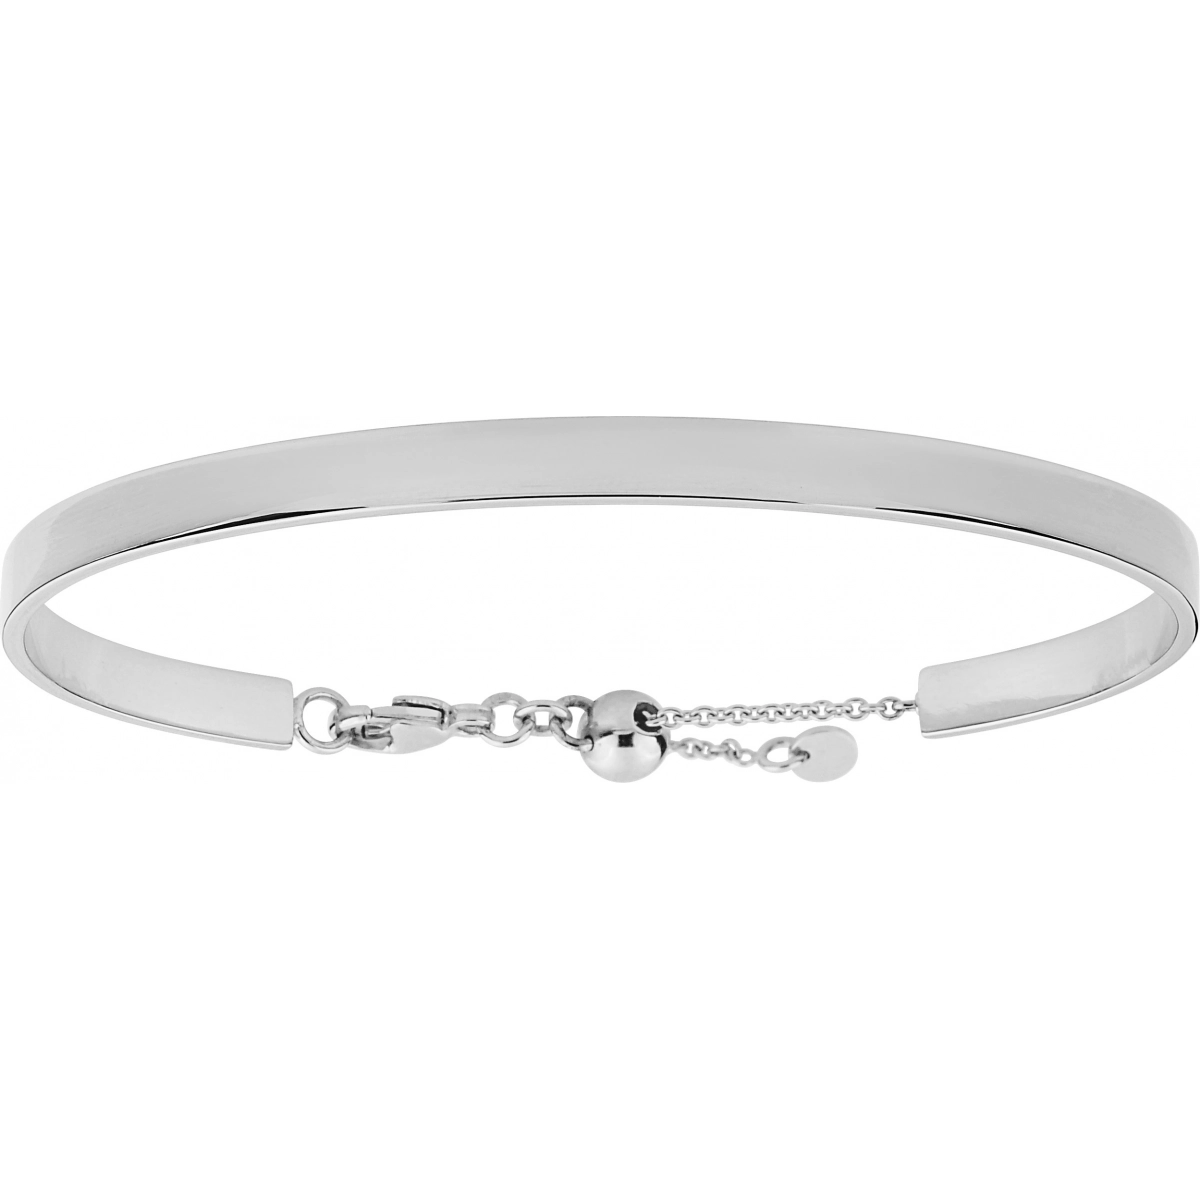 Bracelet rh925 Silver  Lua Blanca  S10.77101.0